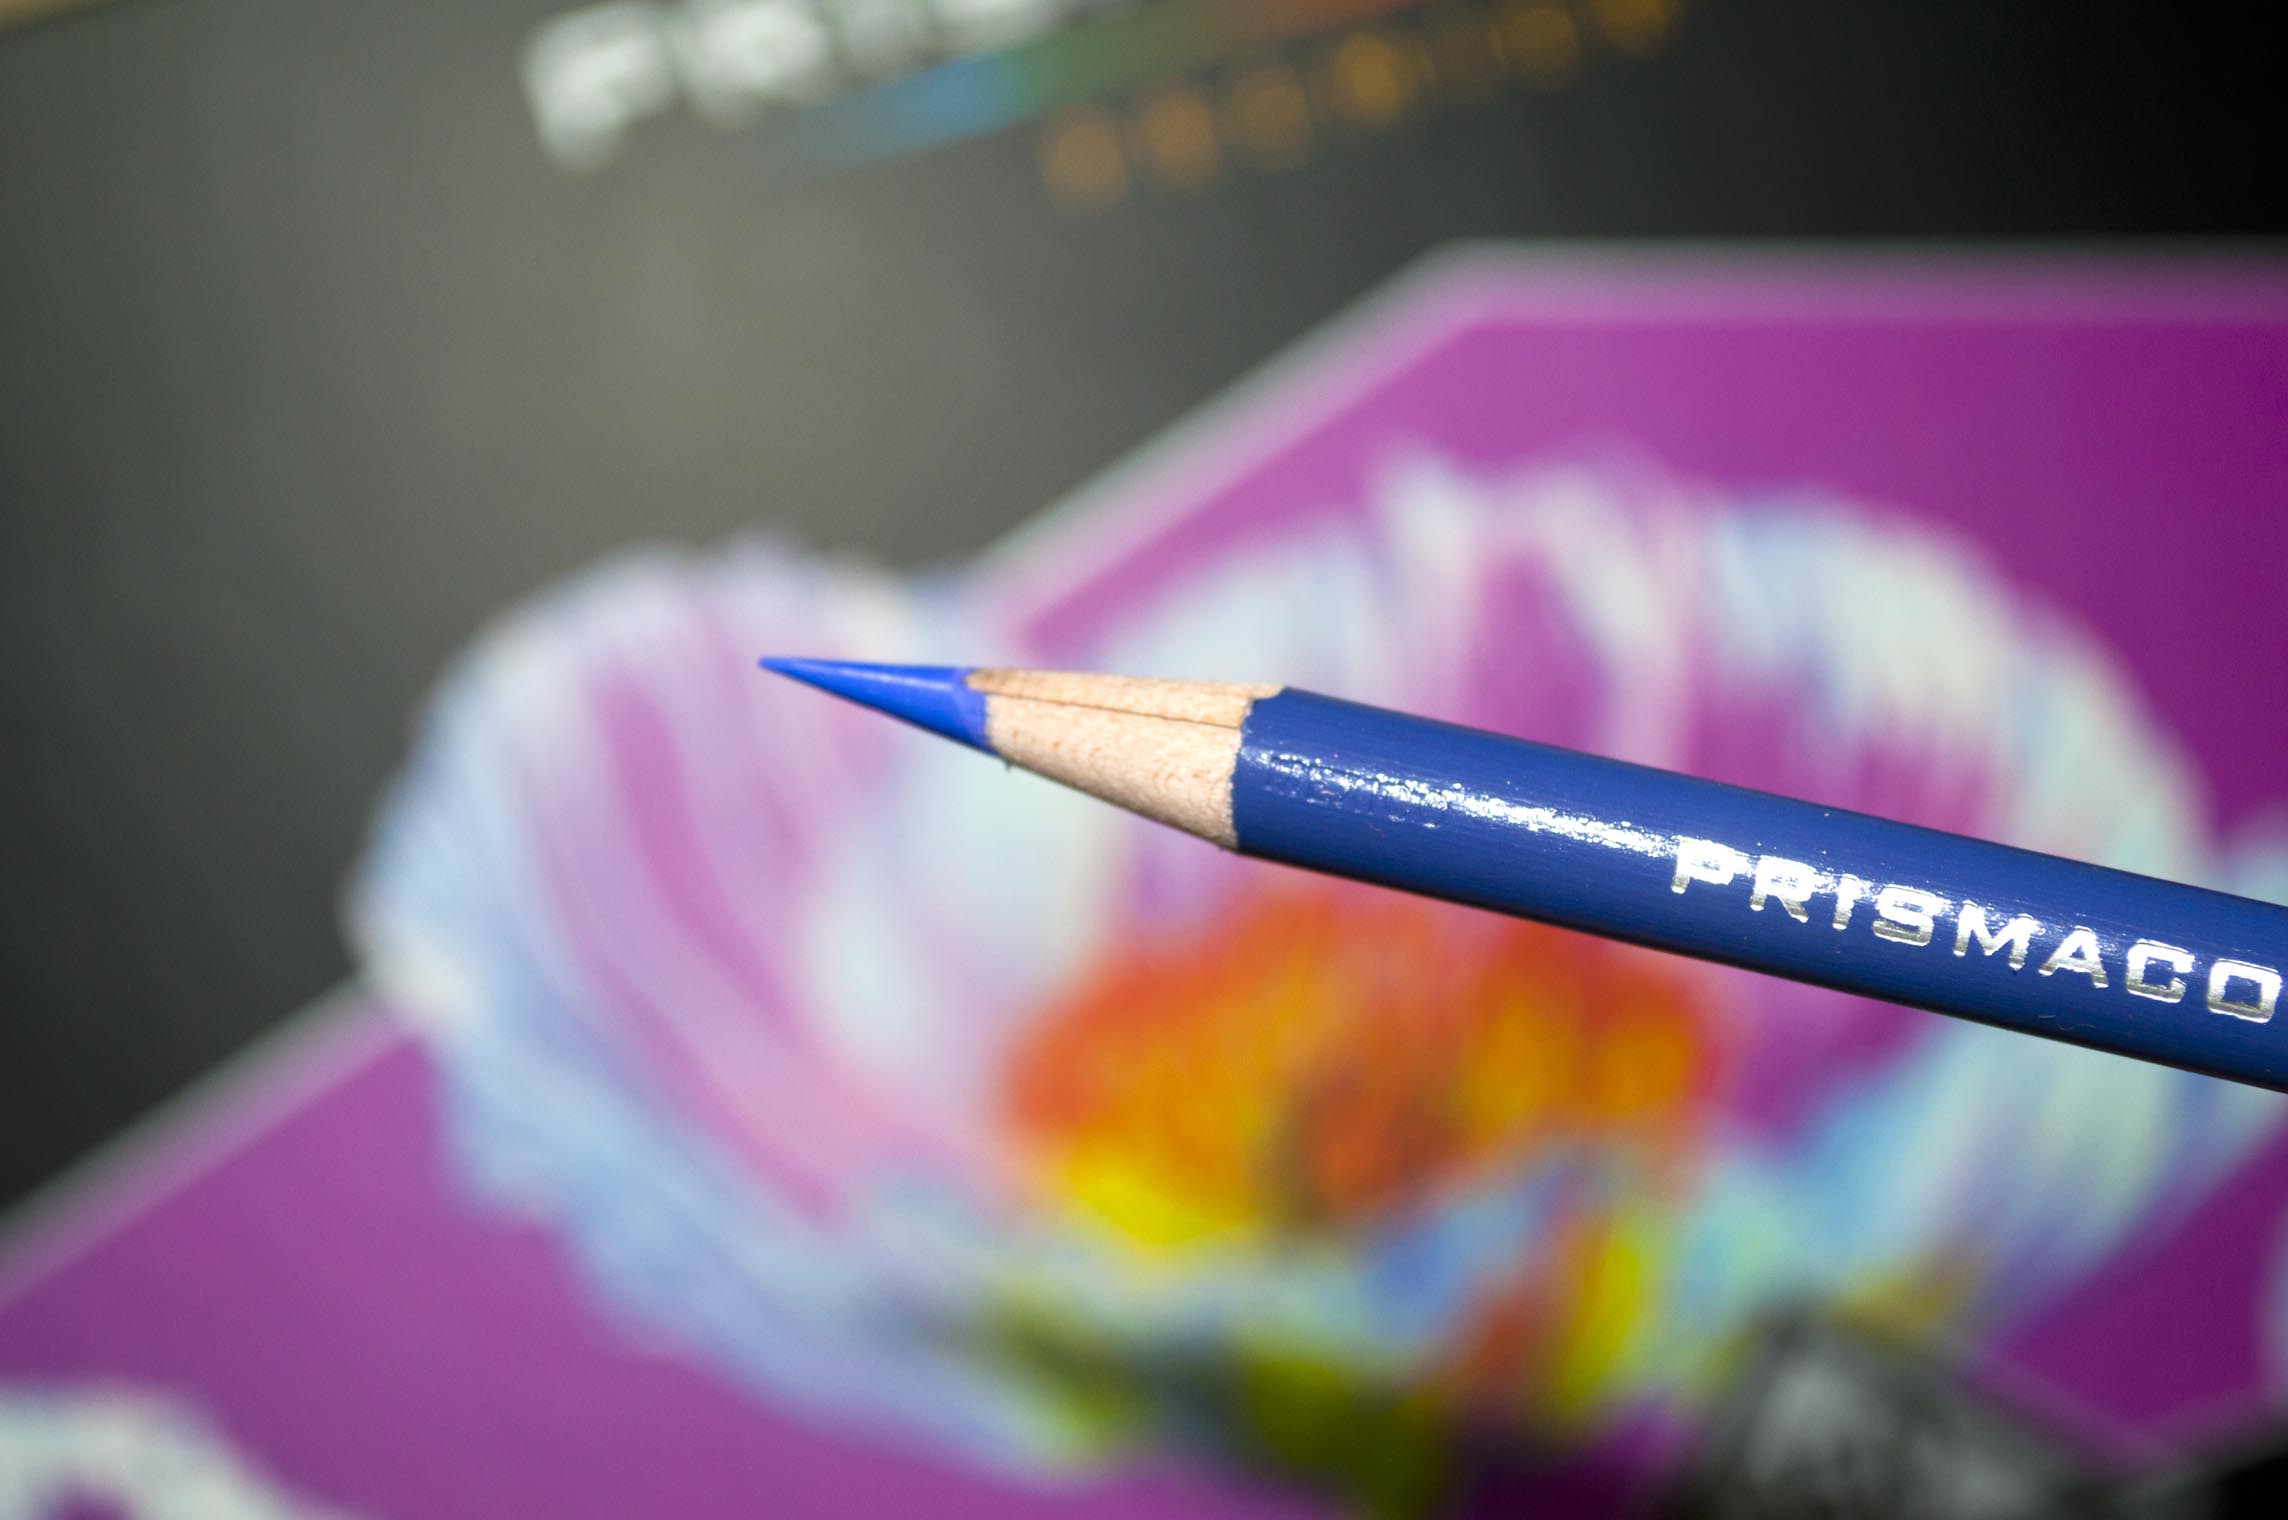 Prismacolor Premier Soft Core Colored Pencil 2-Pack of 12 Black,